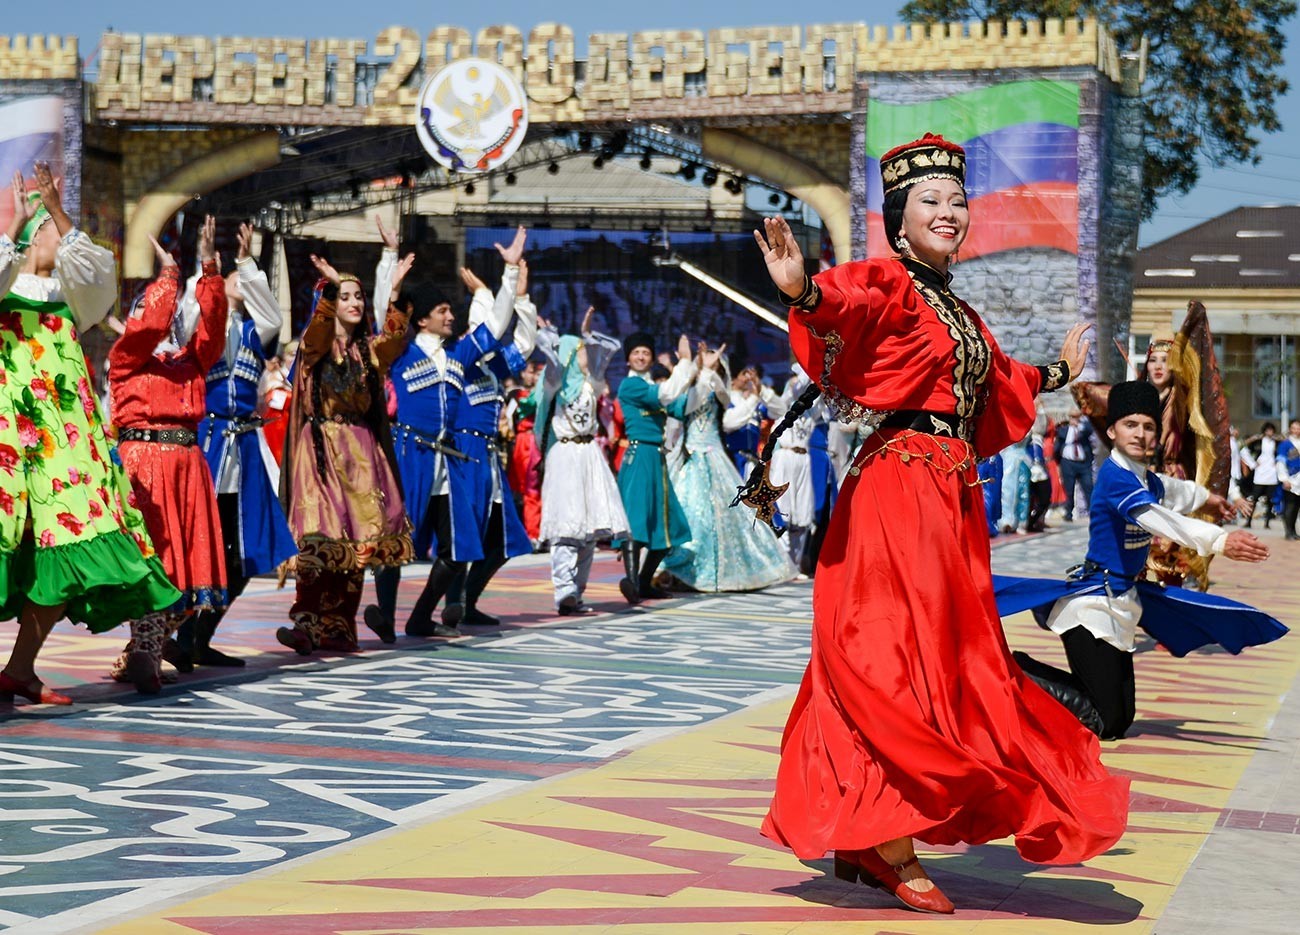 Festival dagestanskih ljudstev v Derbentu.
